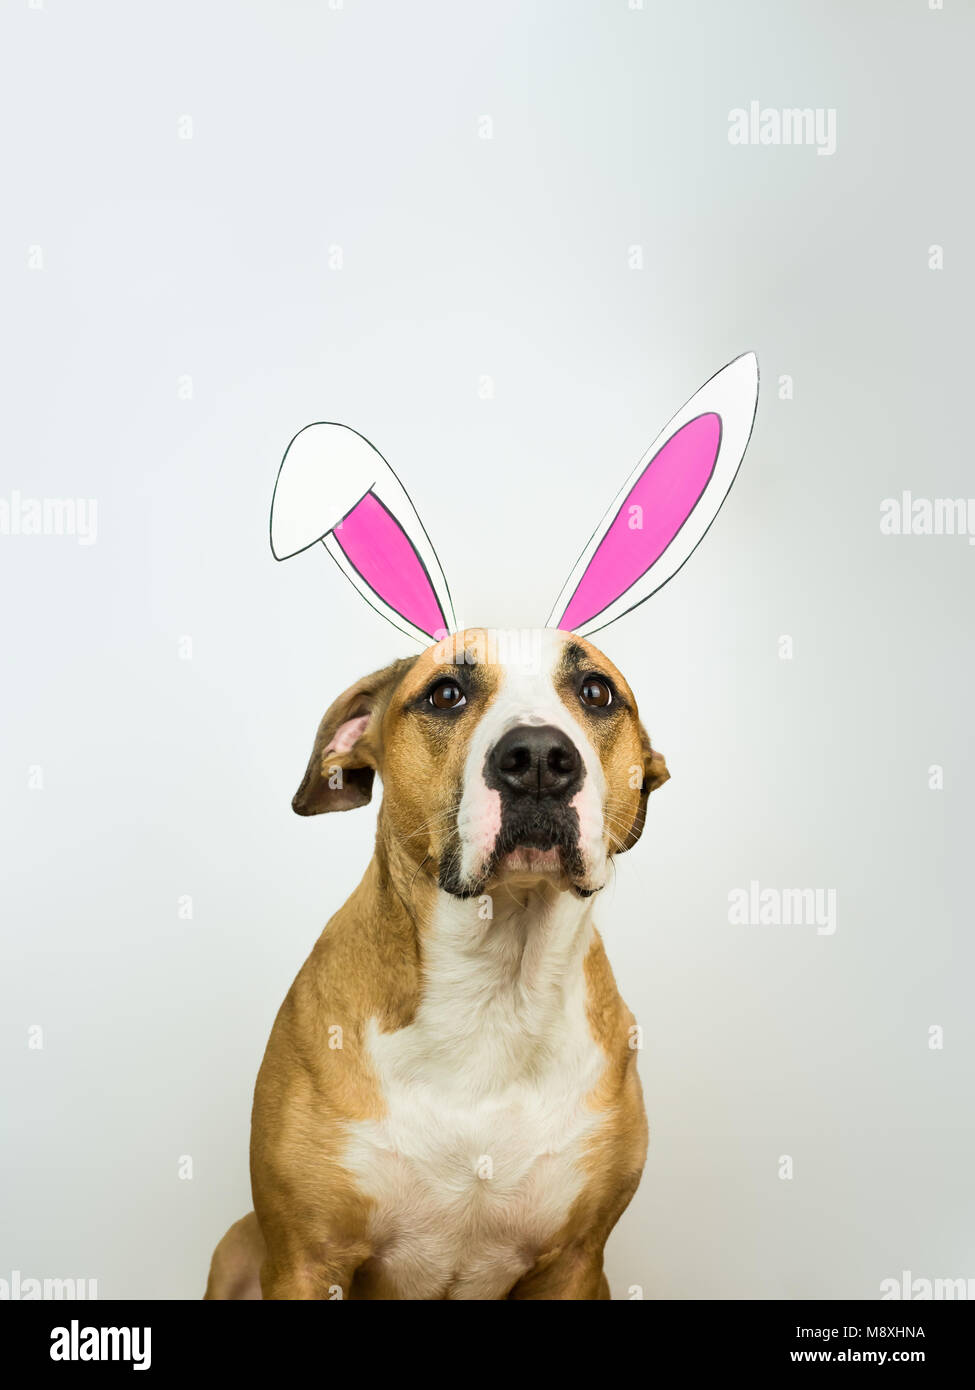 Lustig Hund mit Osterhasen Ohren. Staffordshire Terrier Welpe stellt für Studio shot in hausgemachten Hase Papier Ohren in neutralen weißen Hintergrund gekleidet Stockfoto